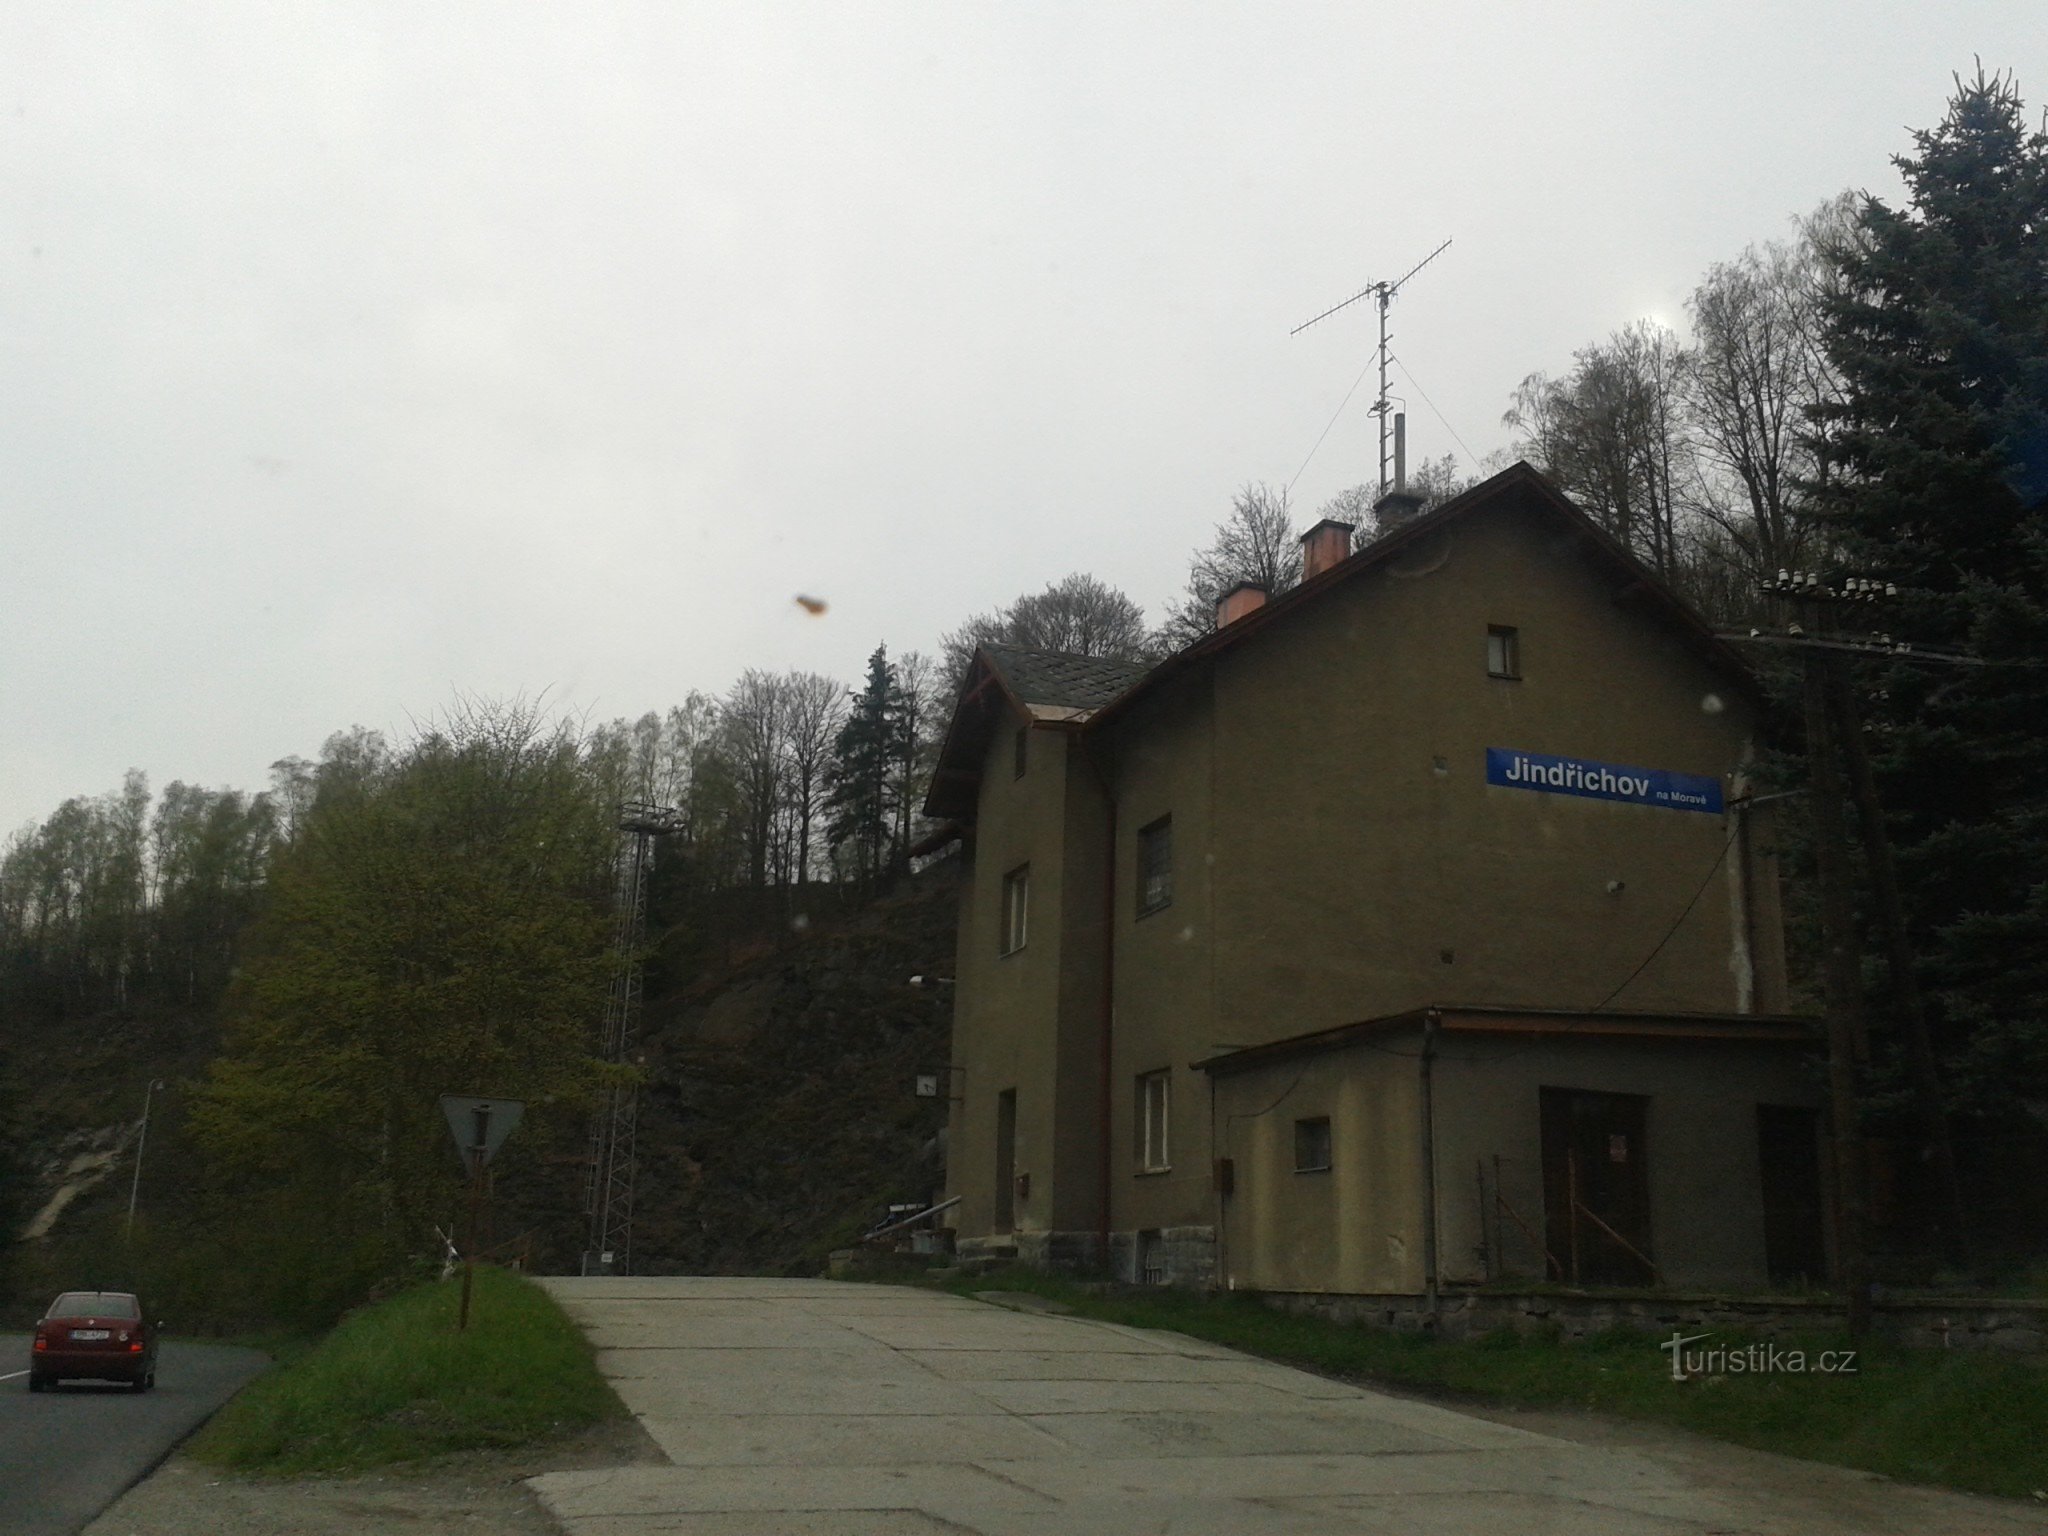 Jindřichov ở Moravia - nhà máy giấy và ga đường sắt trước đây, nơi thời gian đứng yên, quận Šumperk